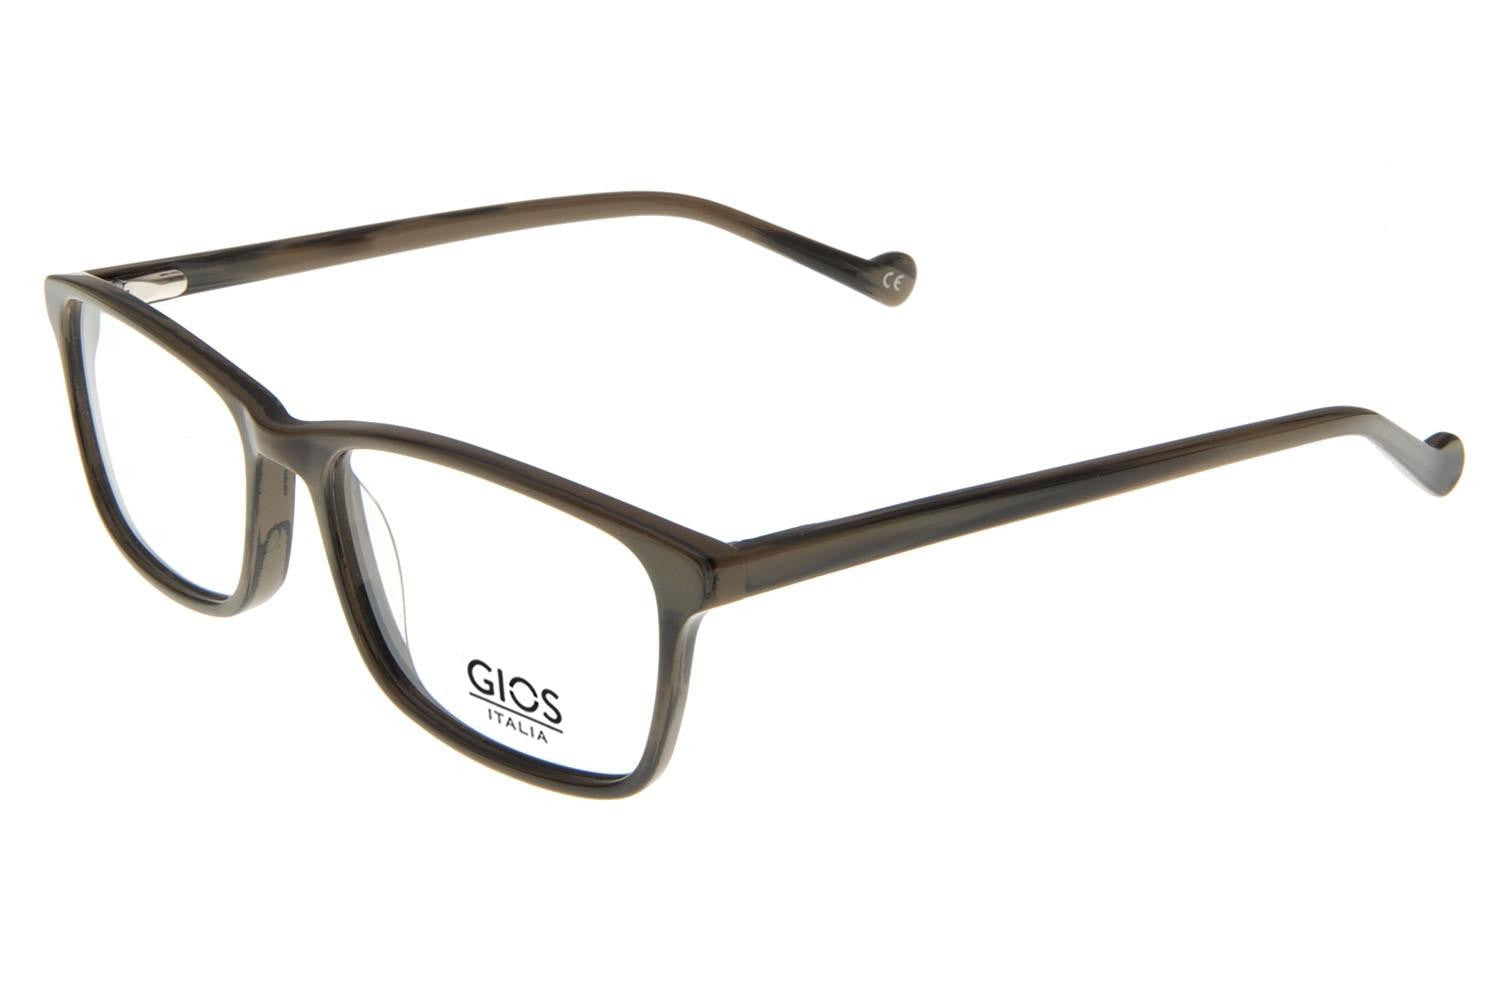 GIOS ITALIA Eyeglasses GRF500110